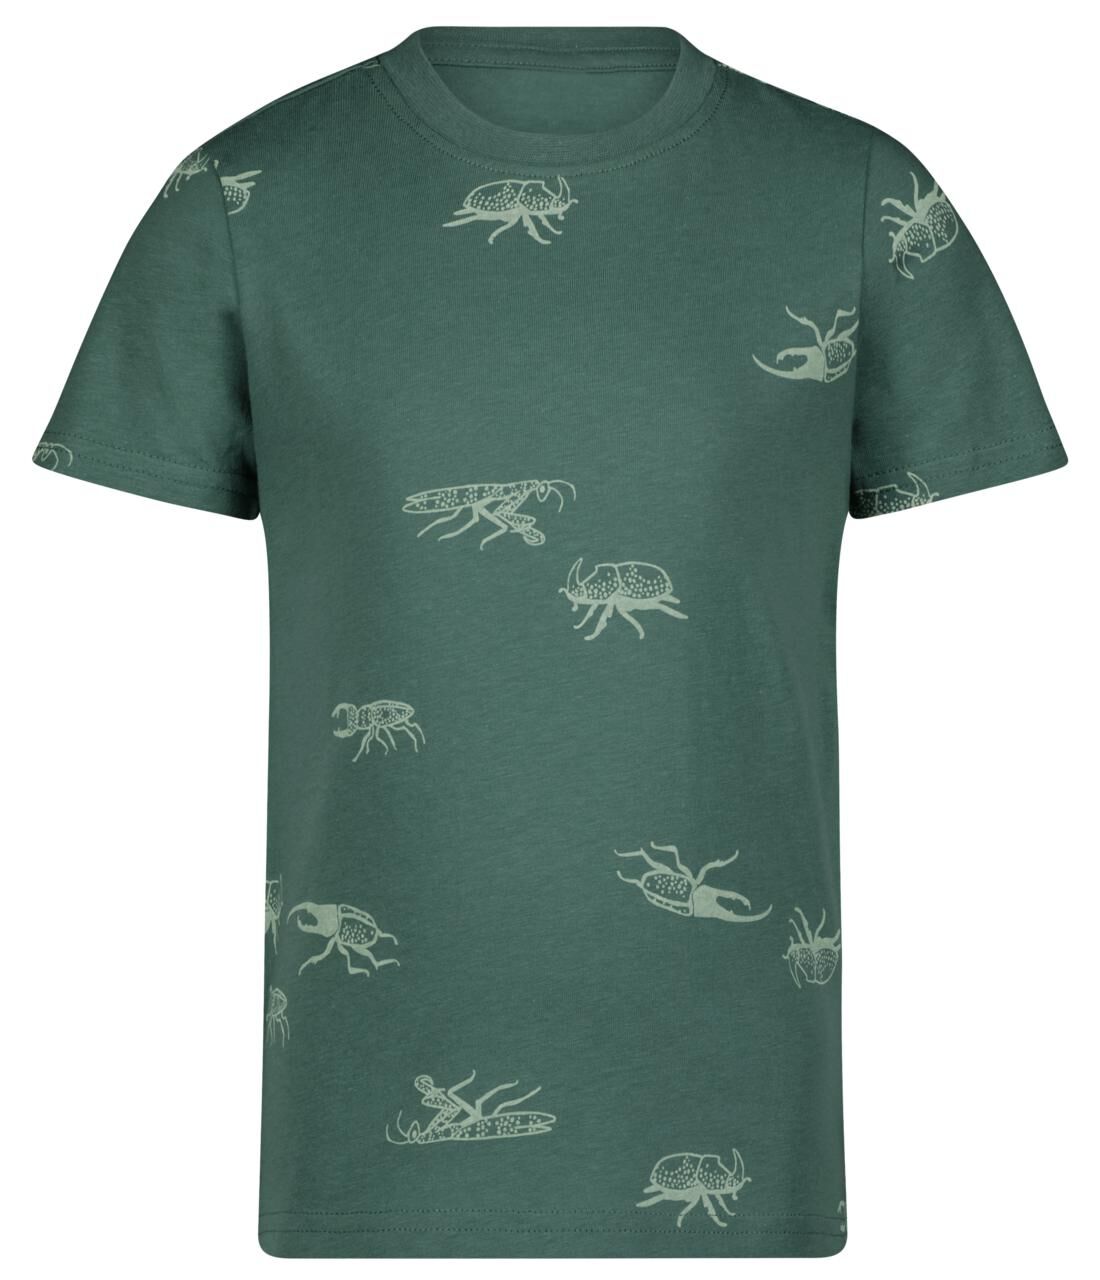 HEMA Kinder T-shirt Insecten Groen (groen)